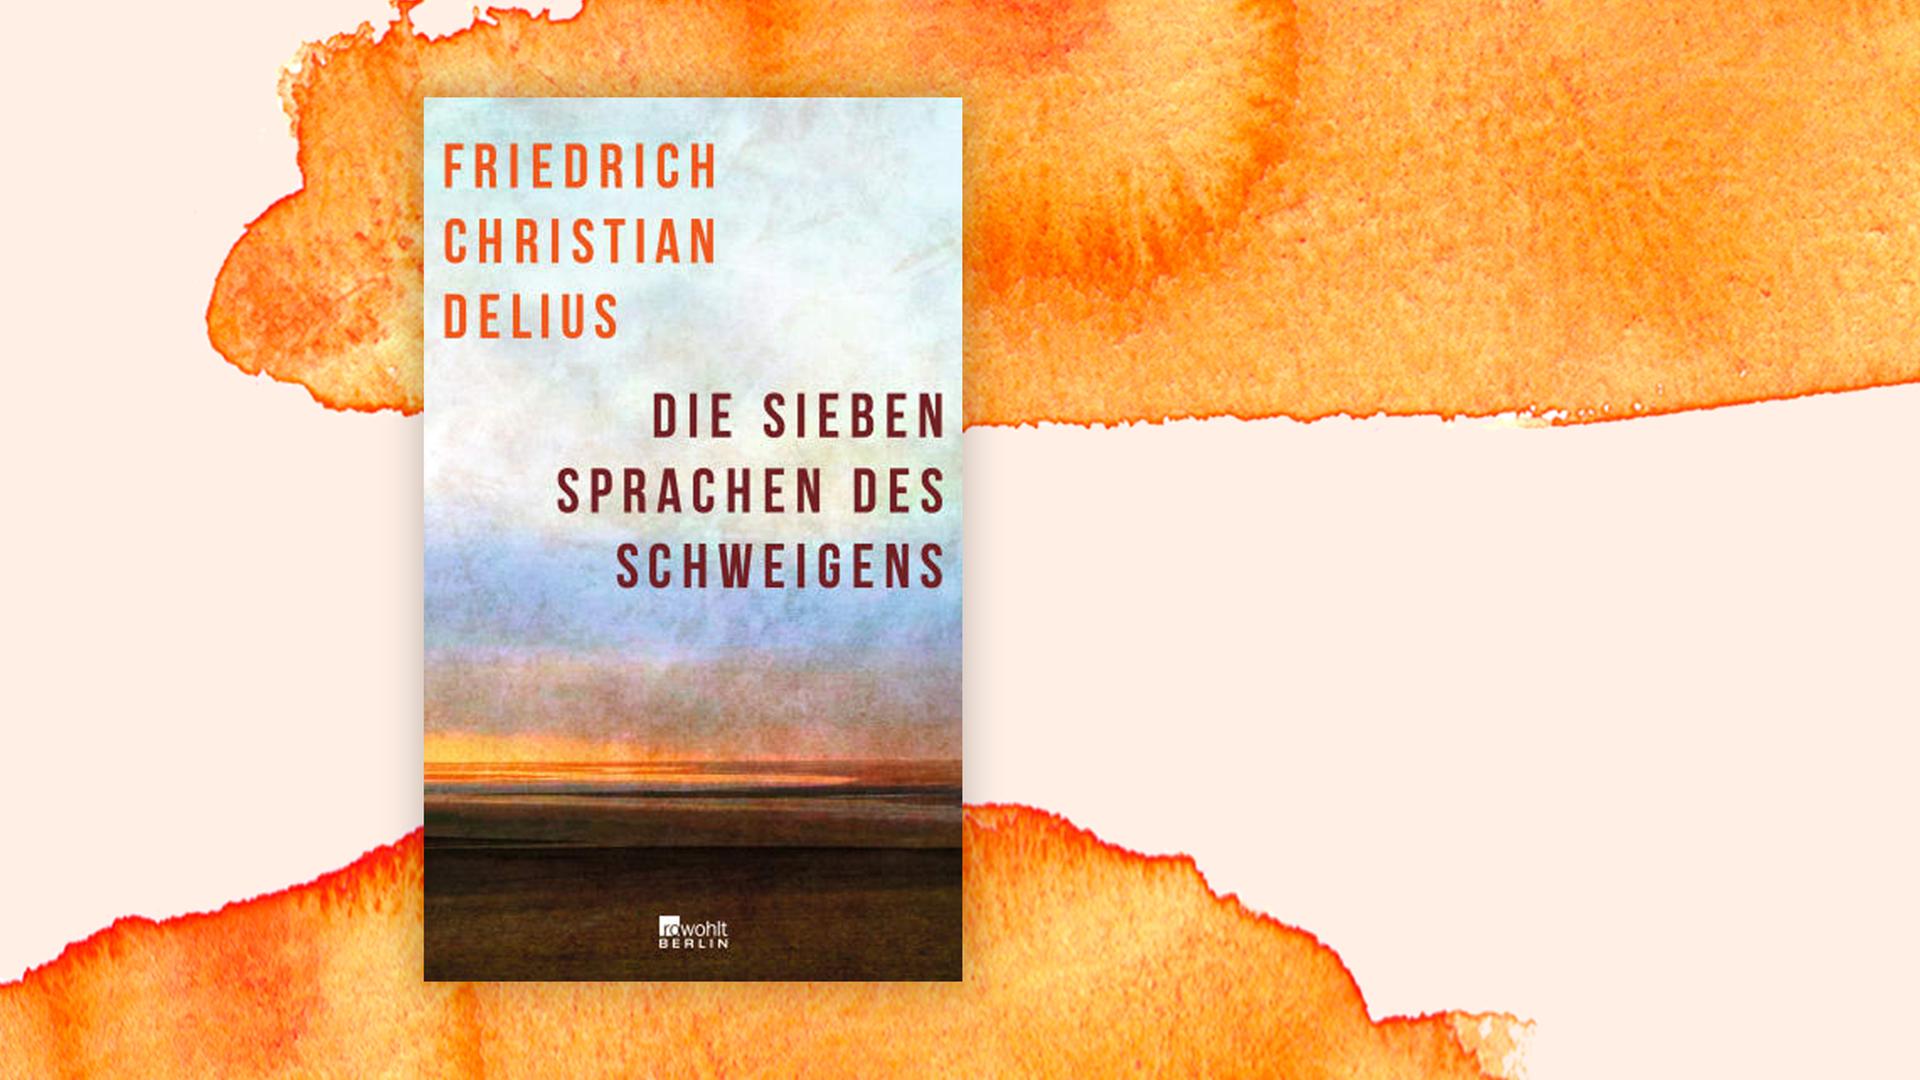 Friedrich Christian Delius: "Die sieben Sprachen des Schweigens"